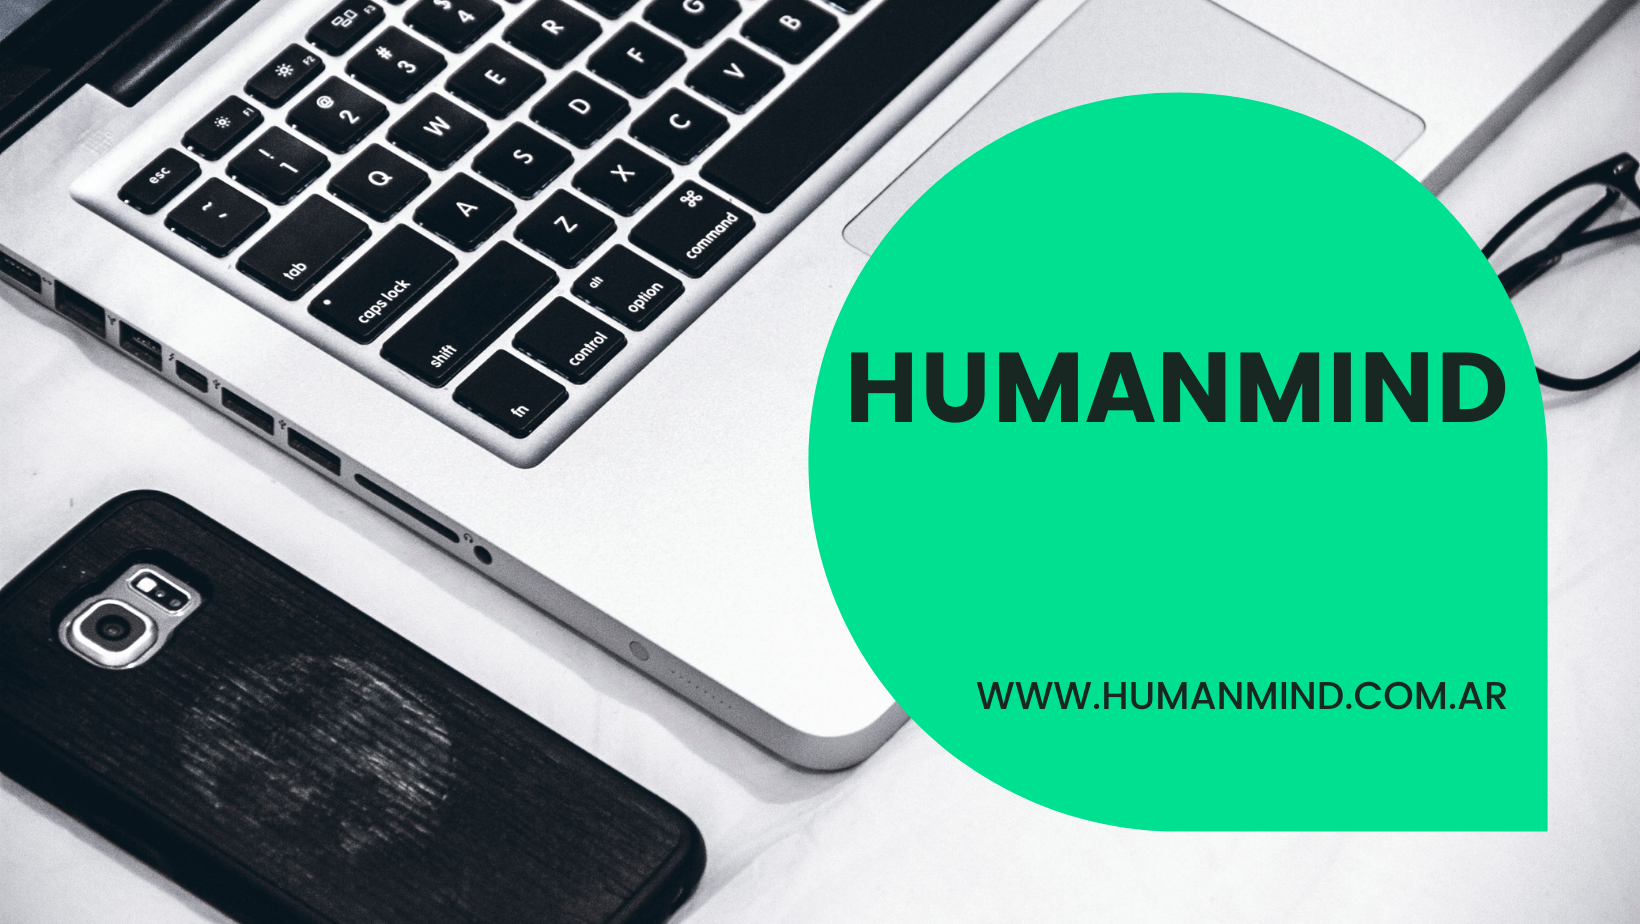 humanmind